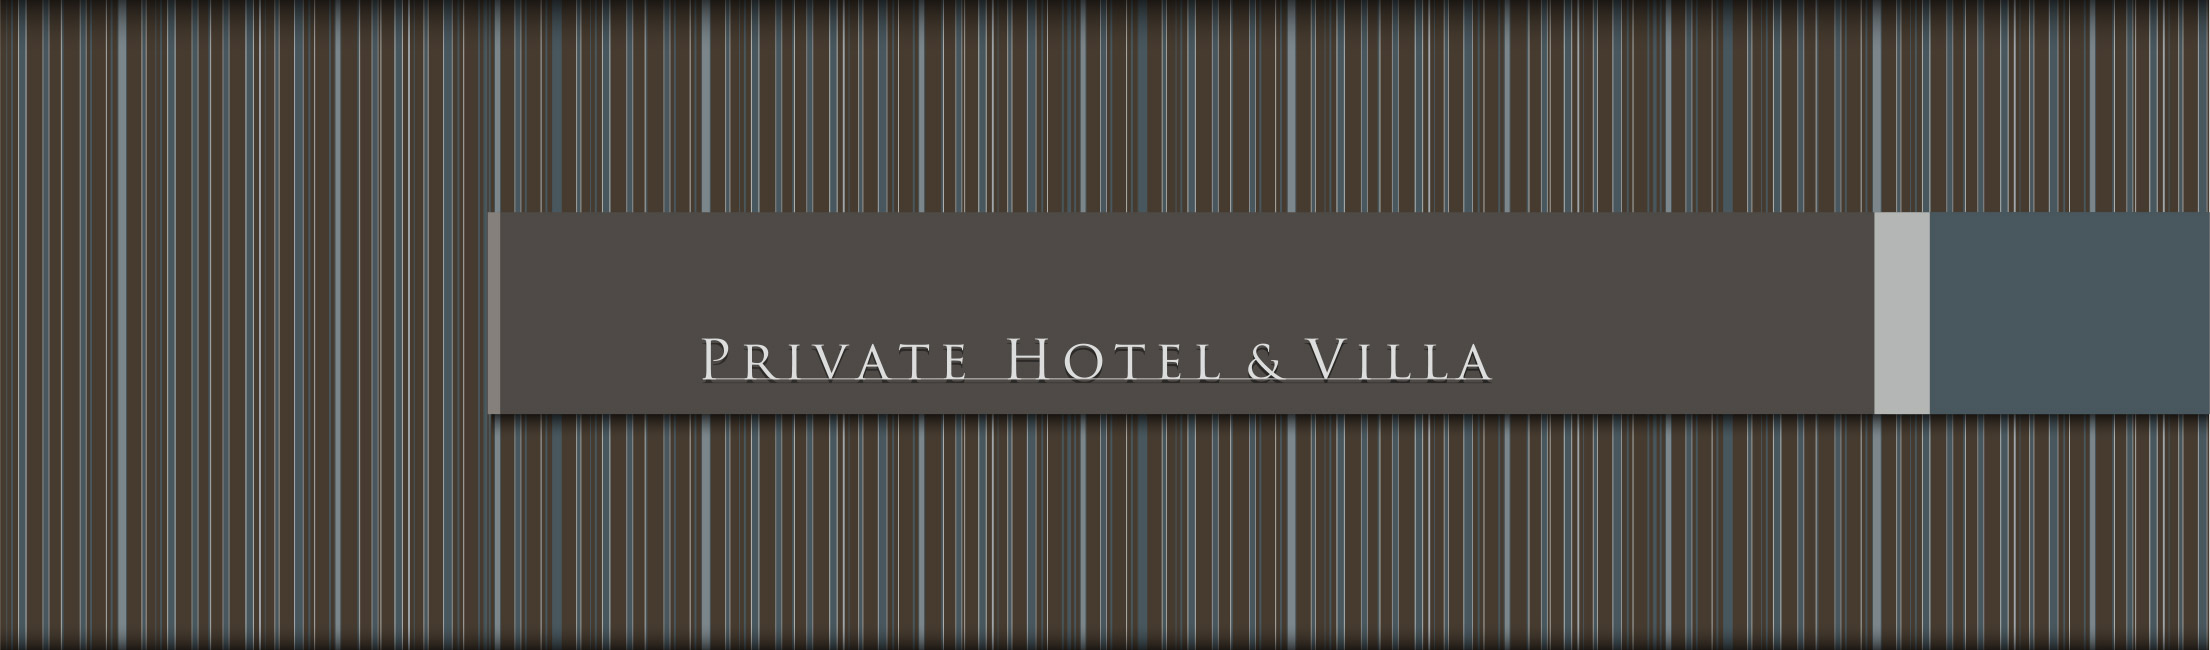 Private Hotel & Villa